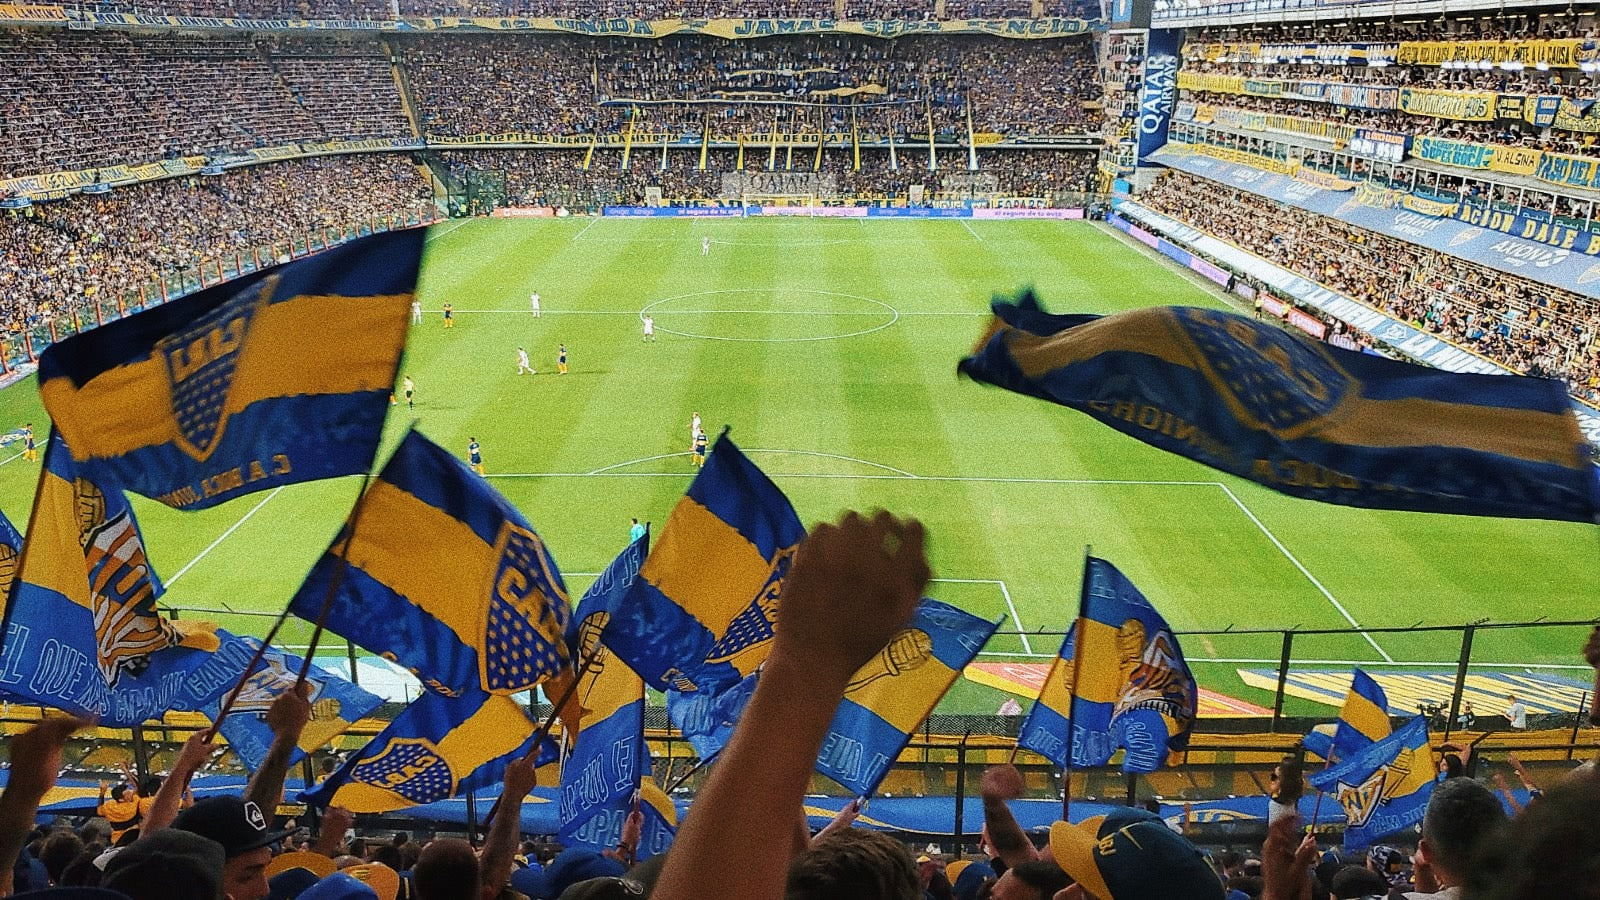 Boca Juniors @ La Bombonera